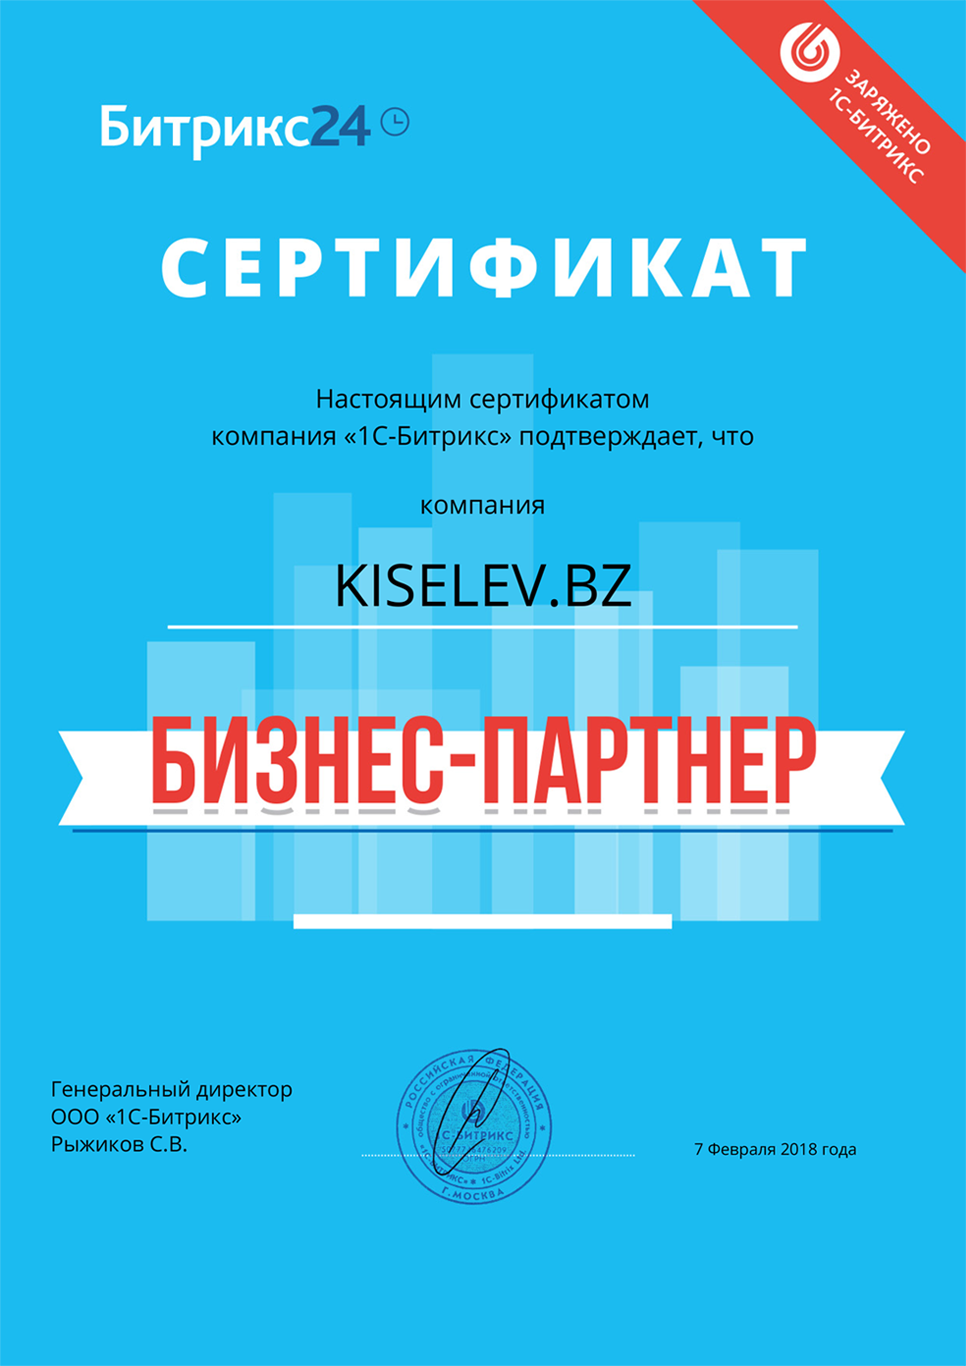 Сертификат партнёра по АМОСРМ в Лесном